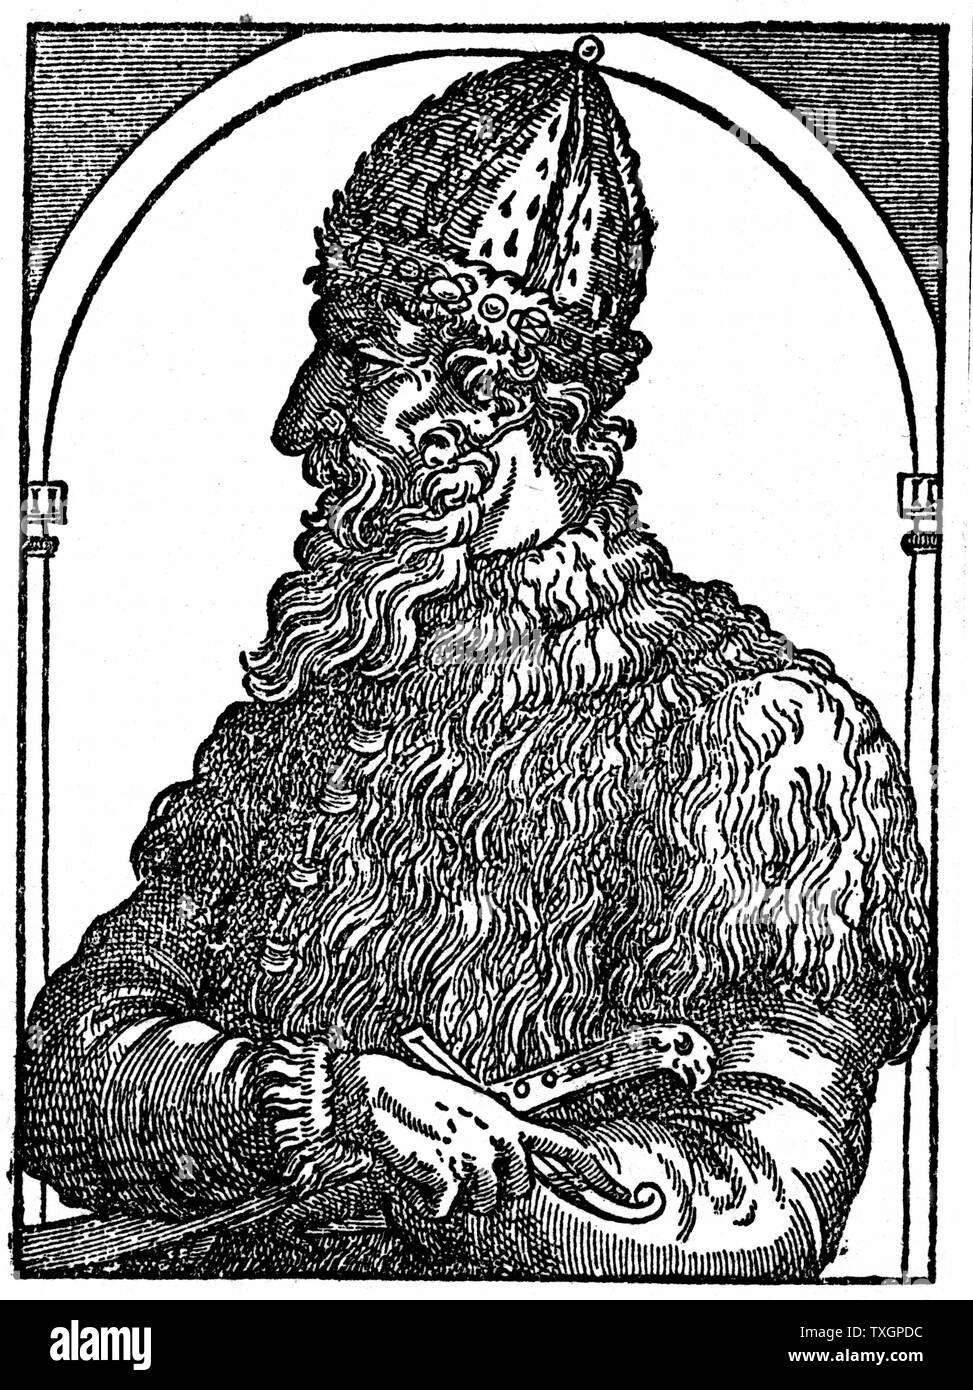 Ivan IV (Ivan der Schreckliche) 1530-1584. Zar von Russland von 1533. Holzschnitt aus dem 16. Jahrhundert Stockfoto